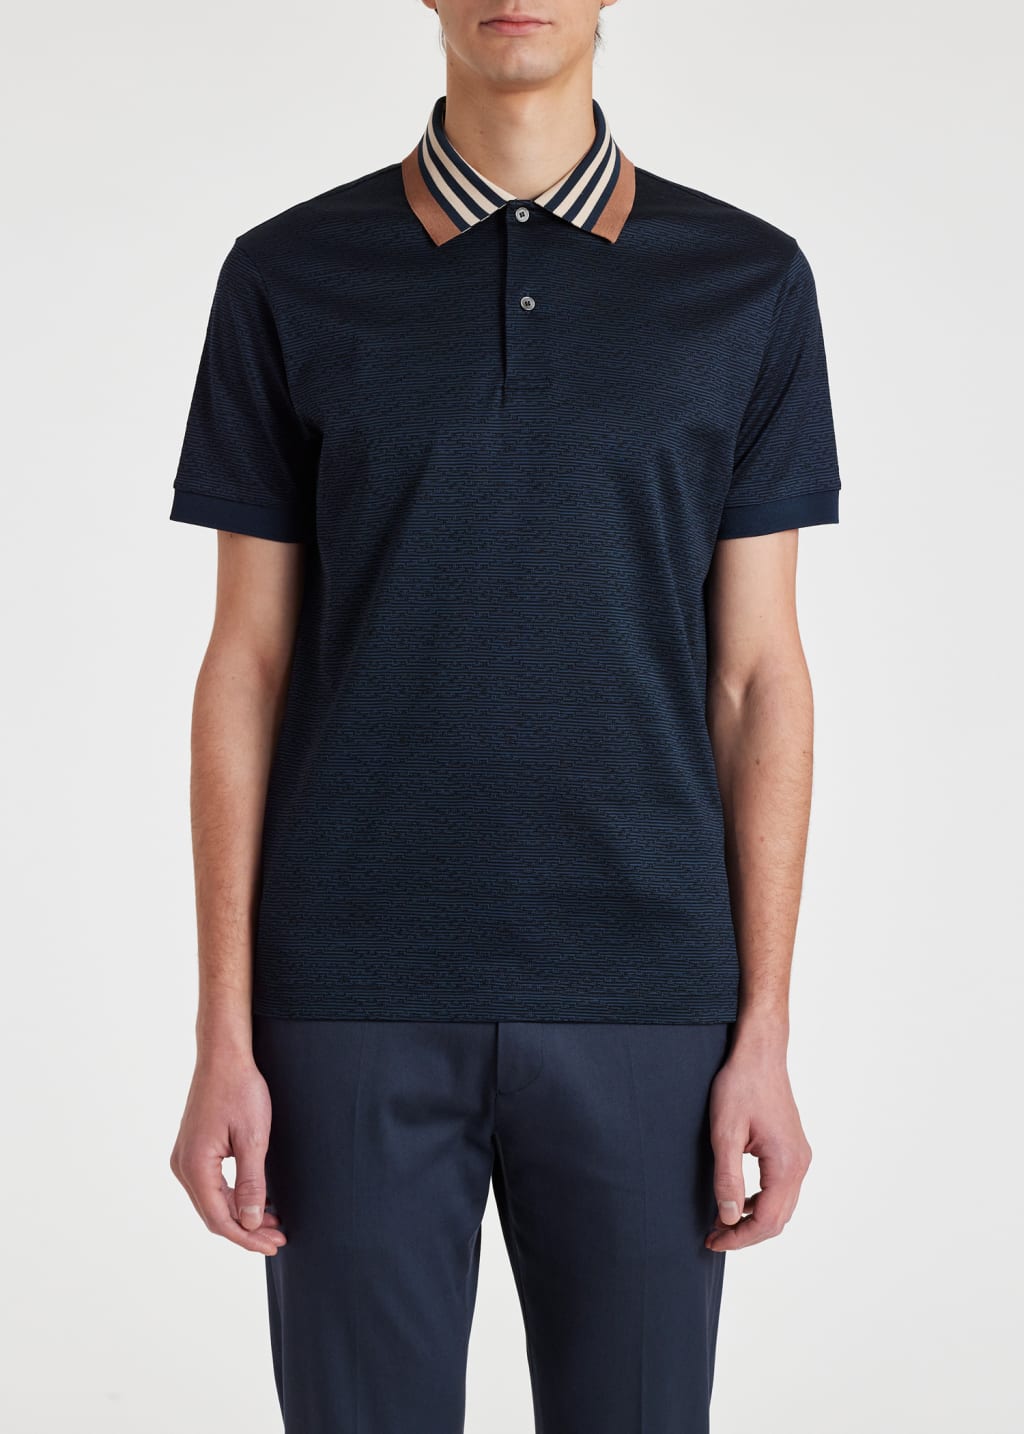 Model View - Navy Contrast Collar Cotton Polo Shirt Paul Smith